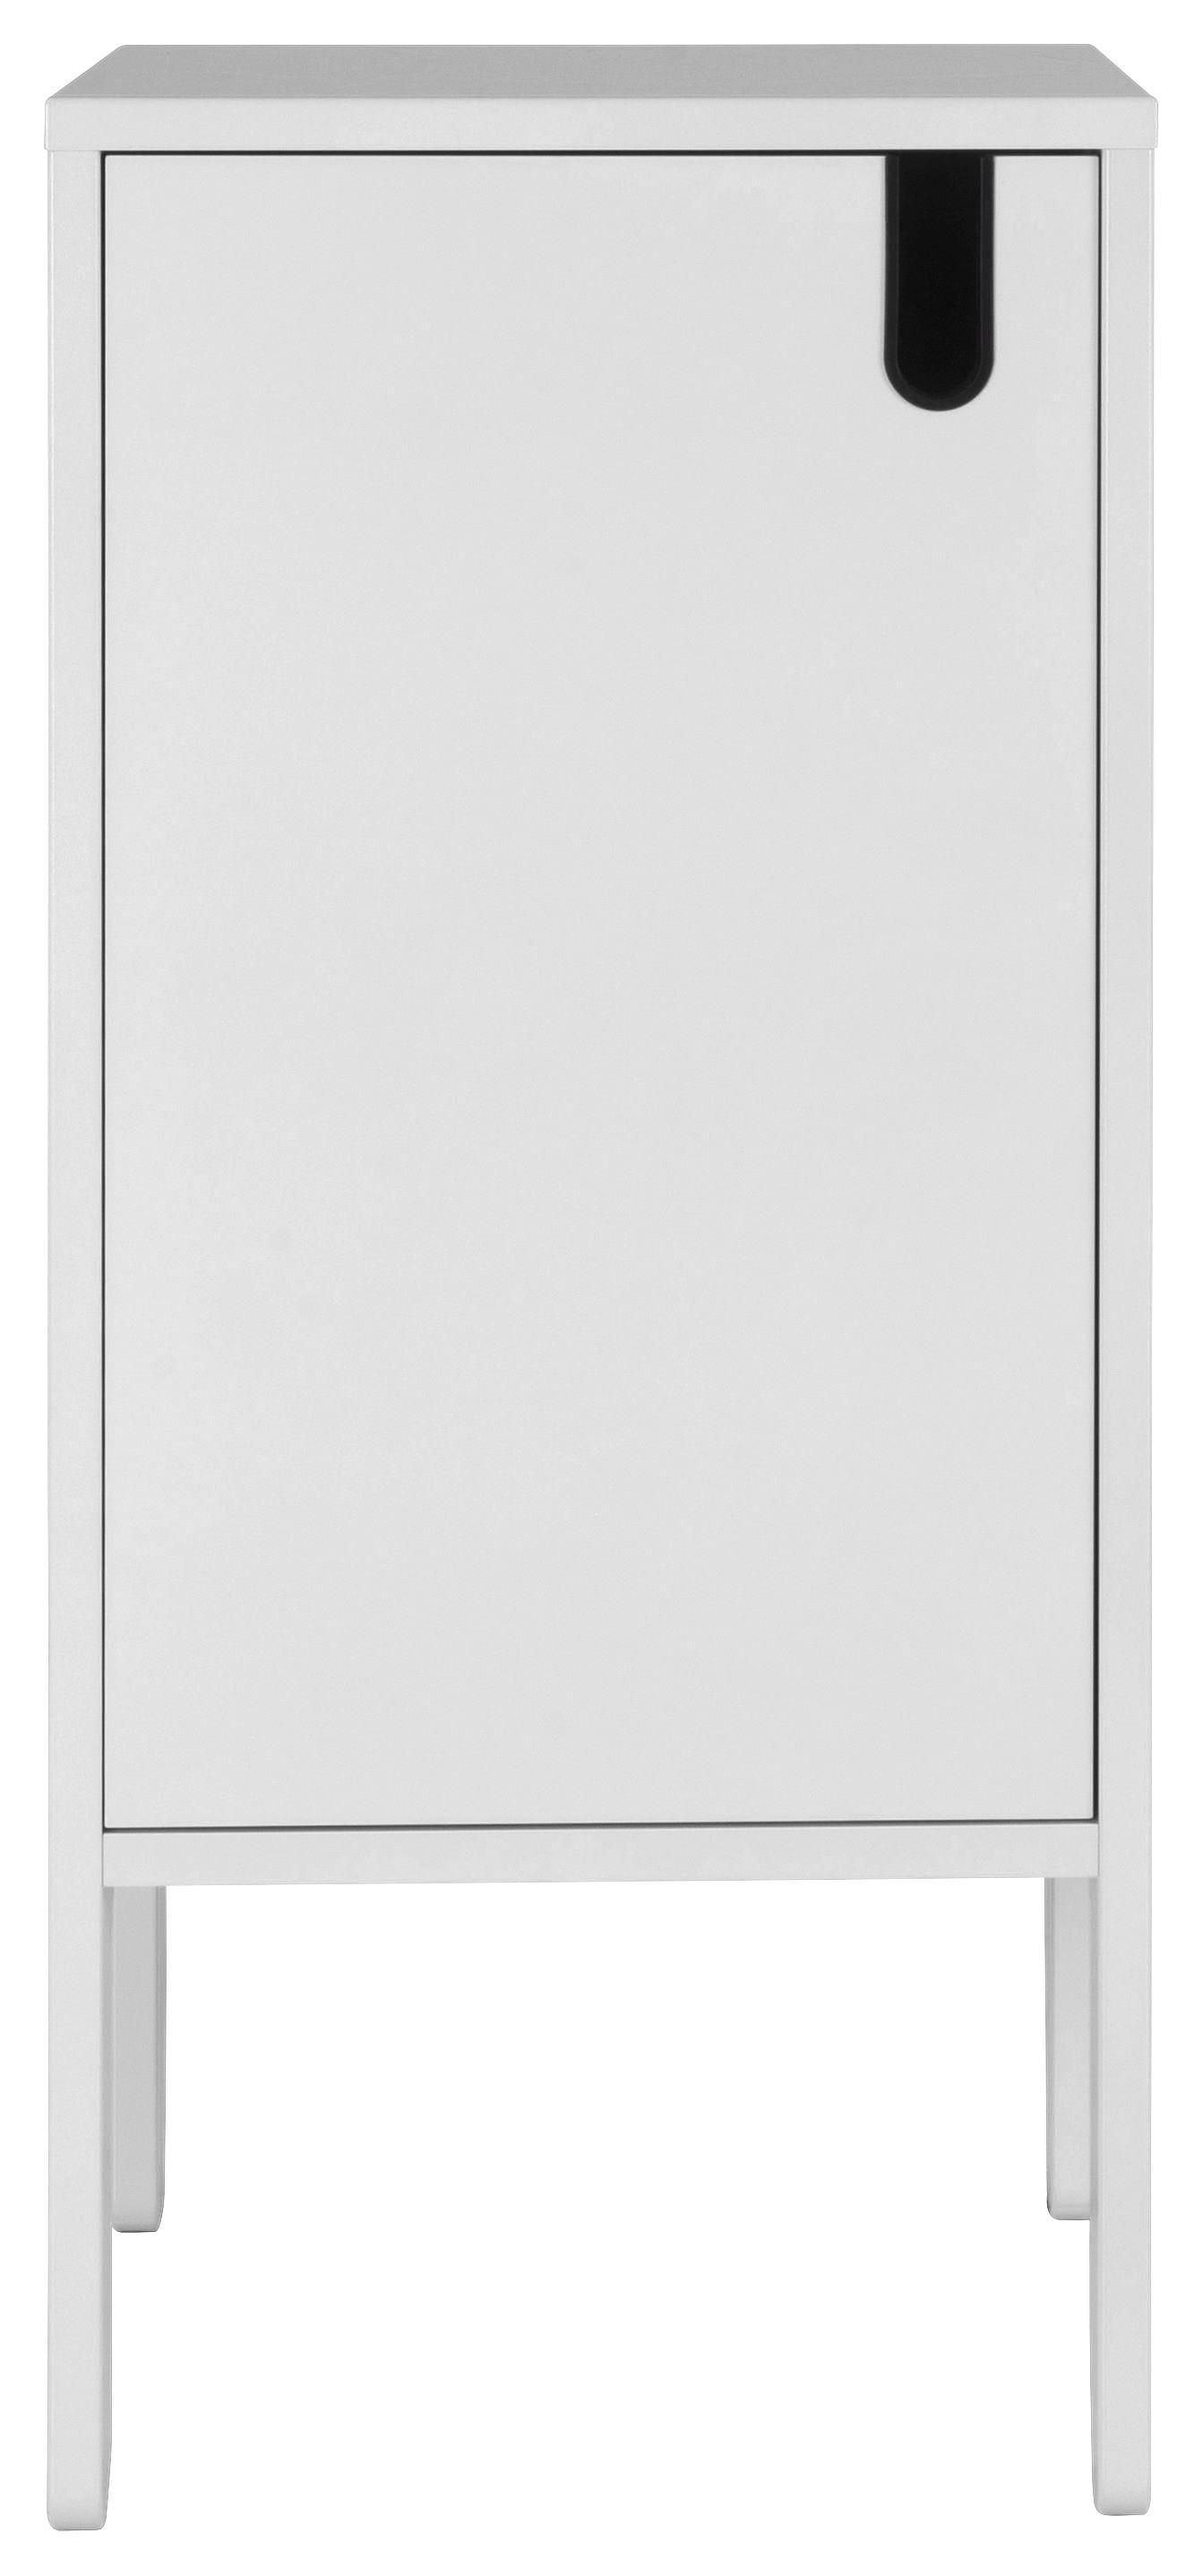 KOMMODE Weiß  - Schwarz/Weiß, Design, Holzwerkstoff/Kunststoff (40/89/40cm)